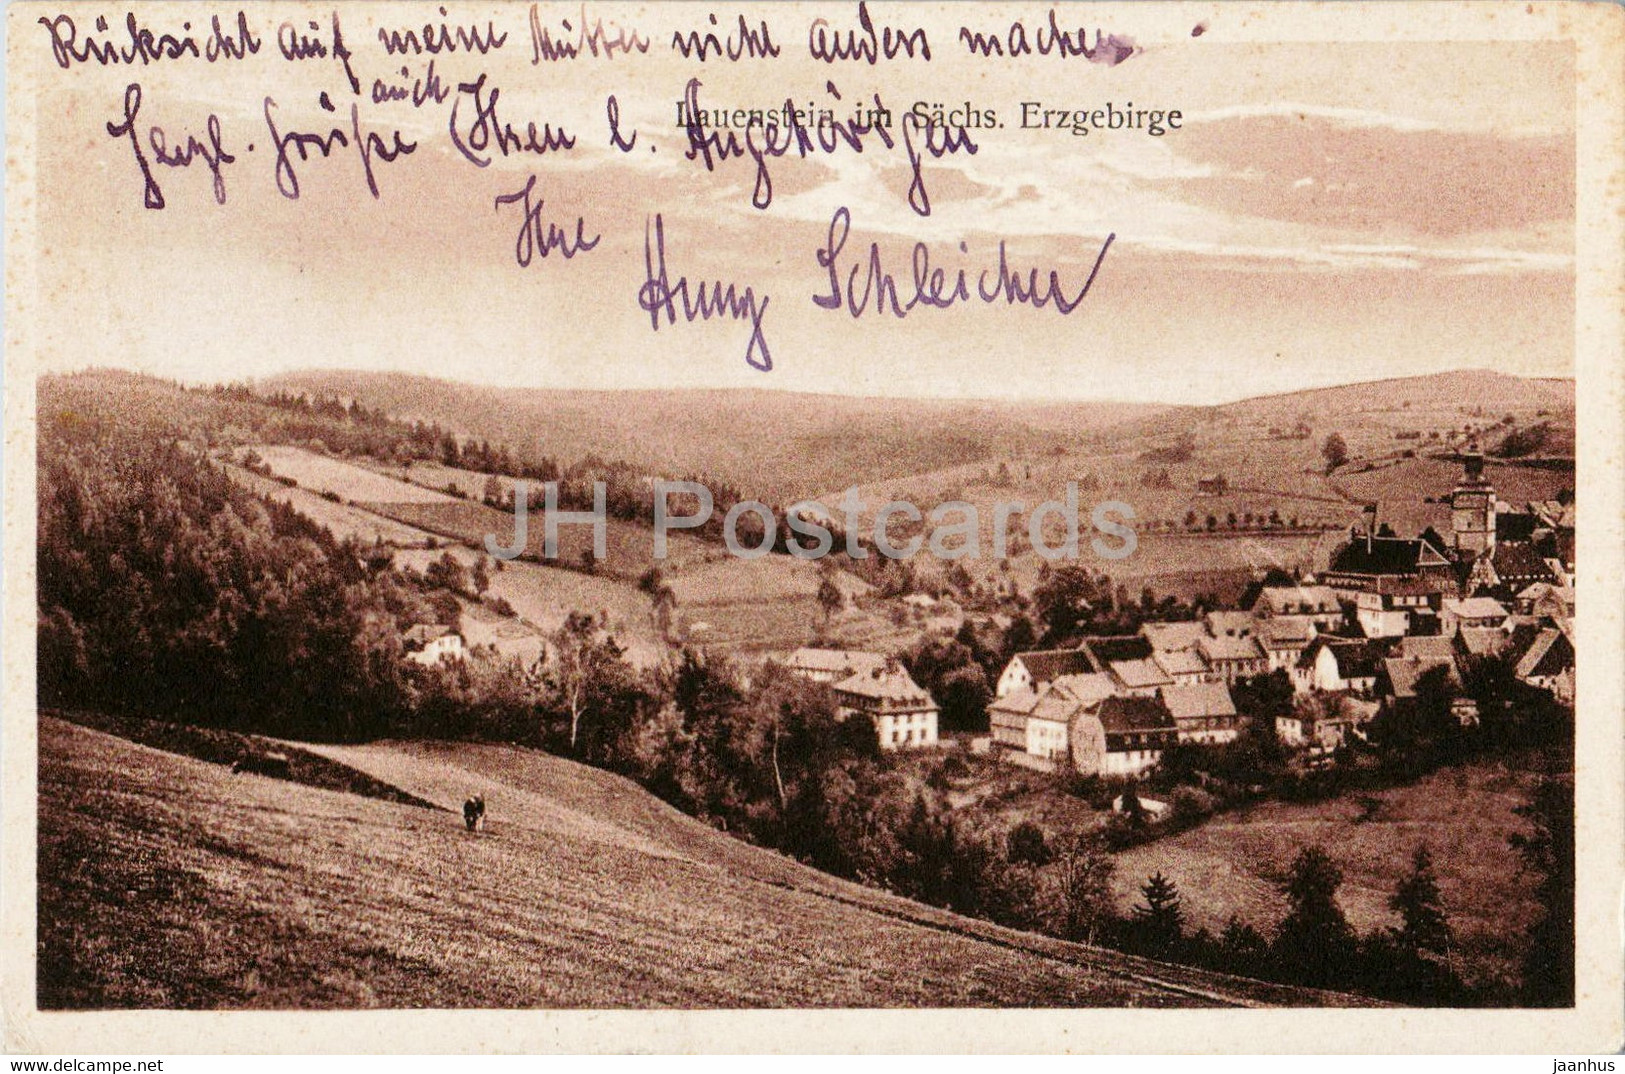 Lauenstein Im Sachs Erzgebirge - Old Postcard - 1929 - Germany - Used - Lauenstein